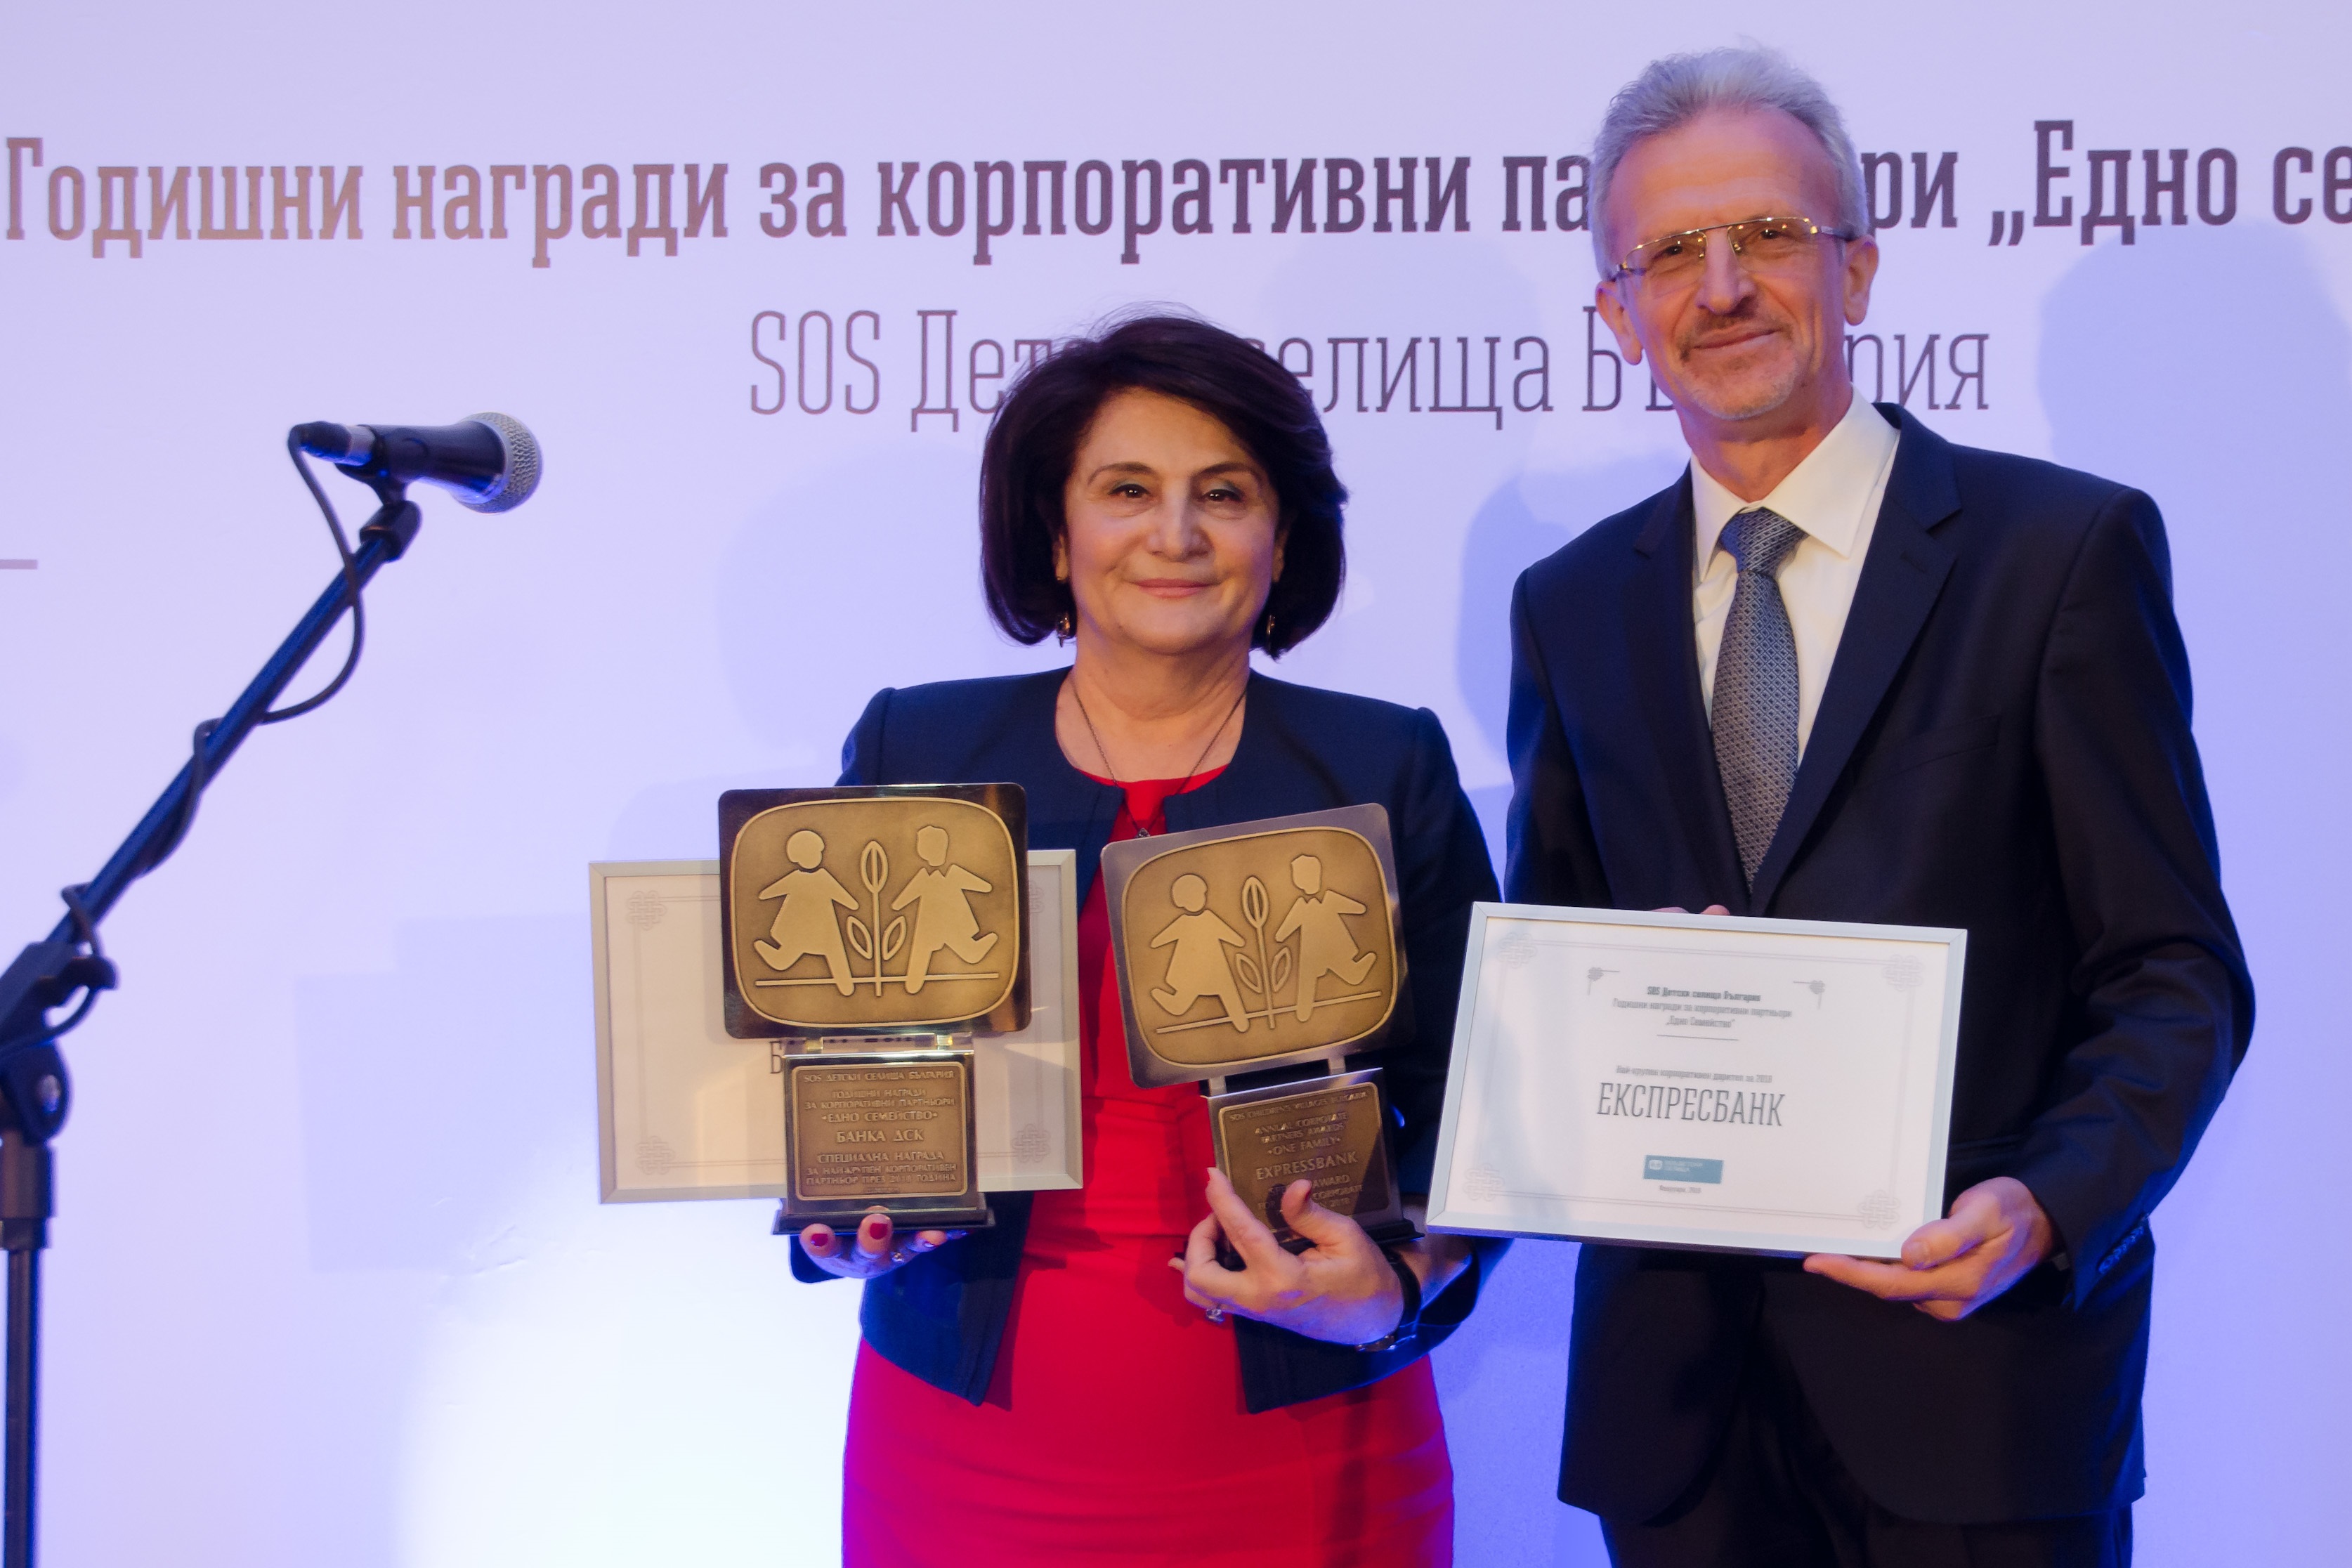 Банка ДСК и Експресбанк с награди за най-крупен корпоративен партньор на SOS Детски селища България